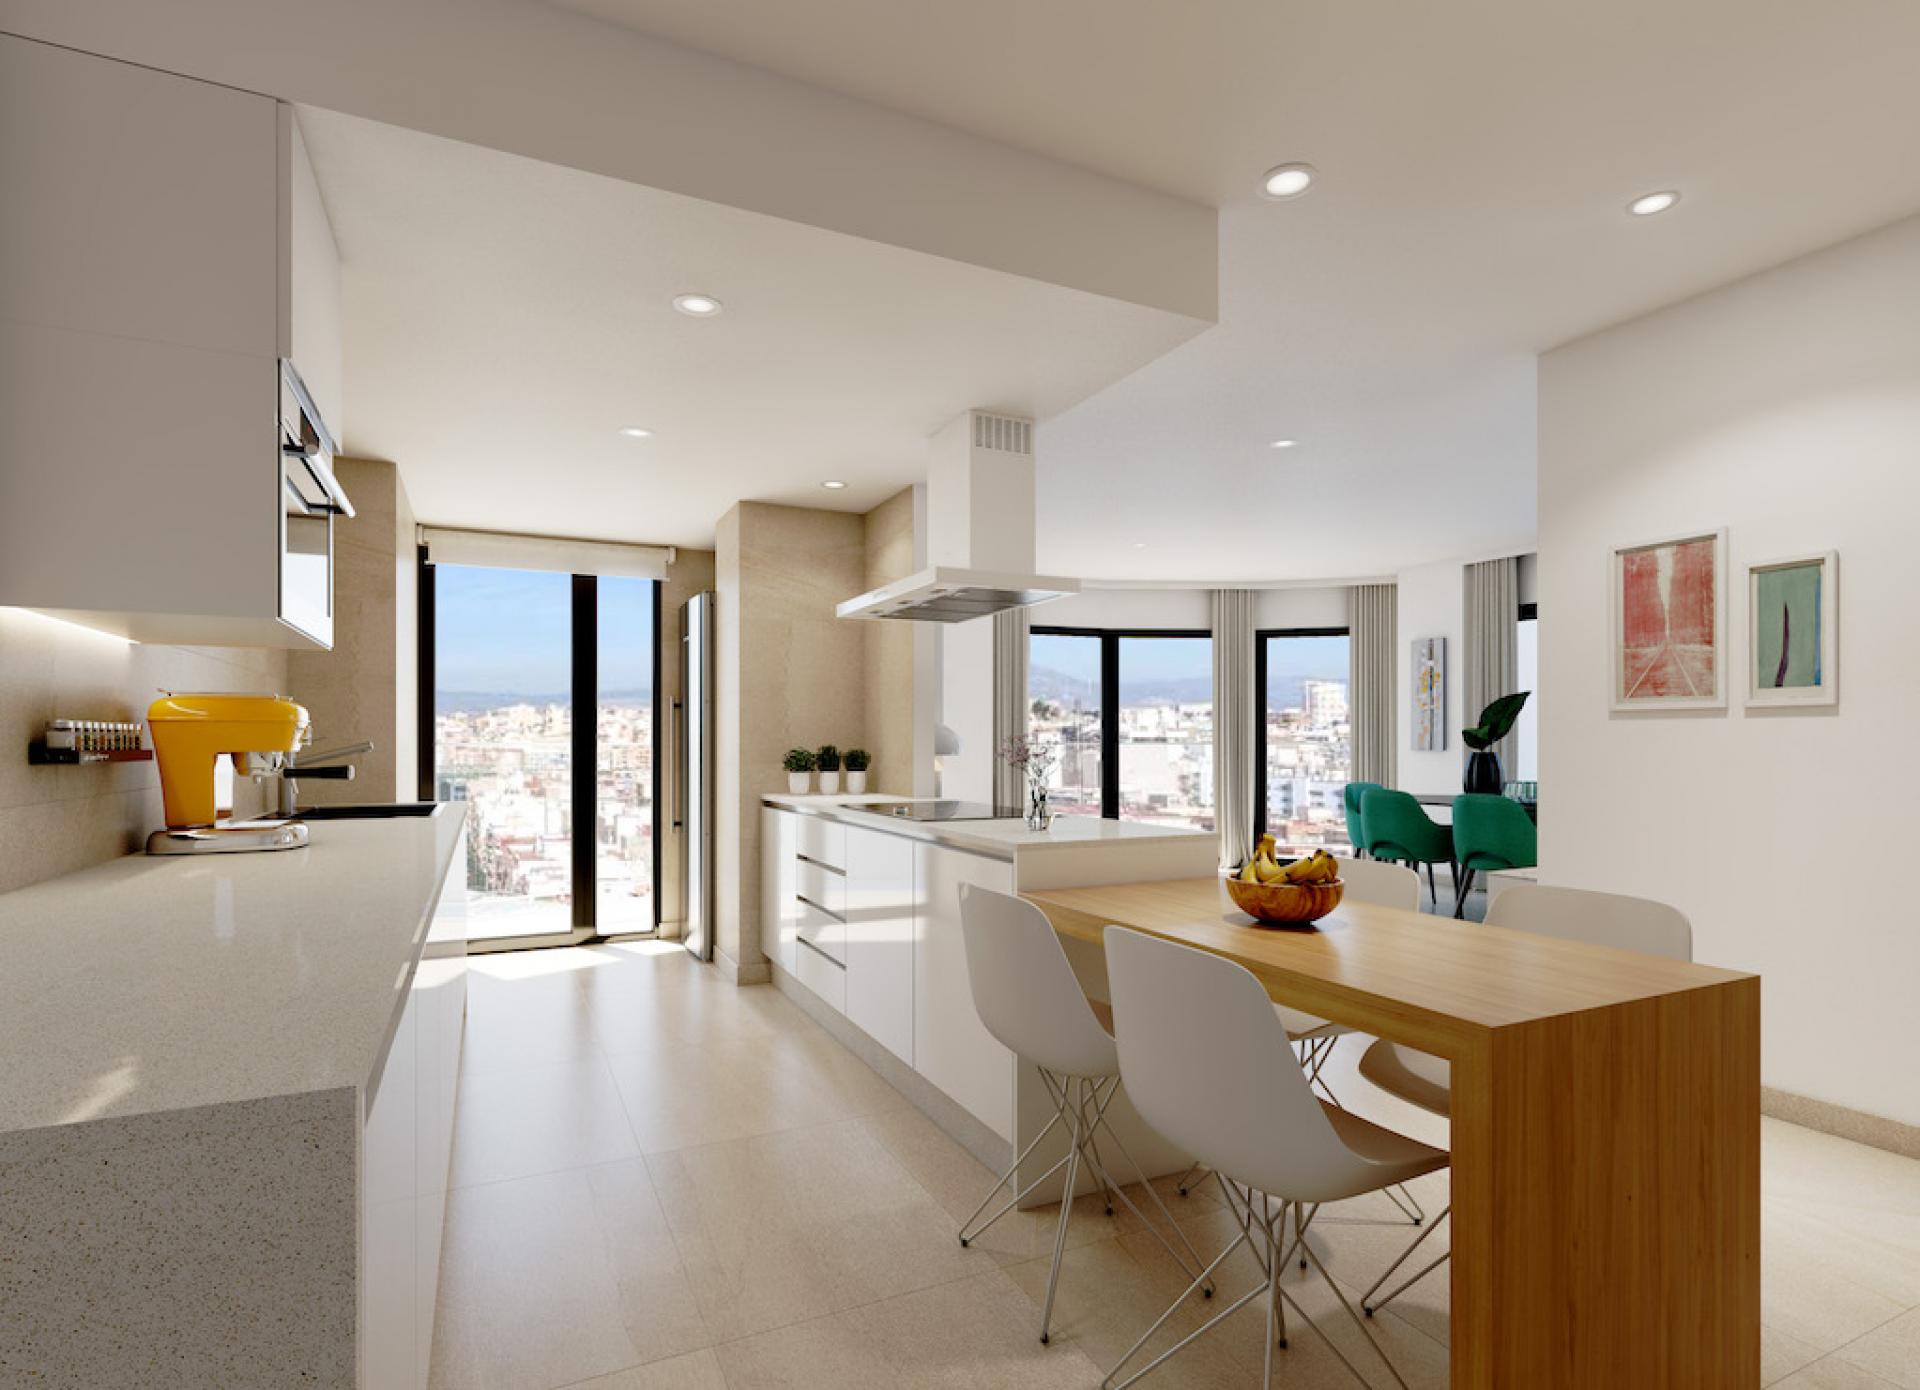 2 slaapkamer Appartement met terras in Alicante - Nieuwbouw in Medvilla Spanje